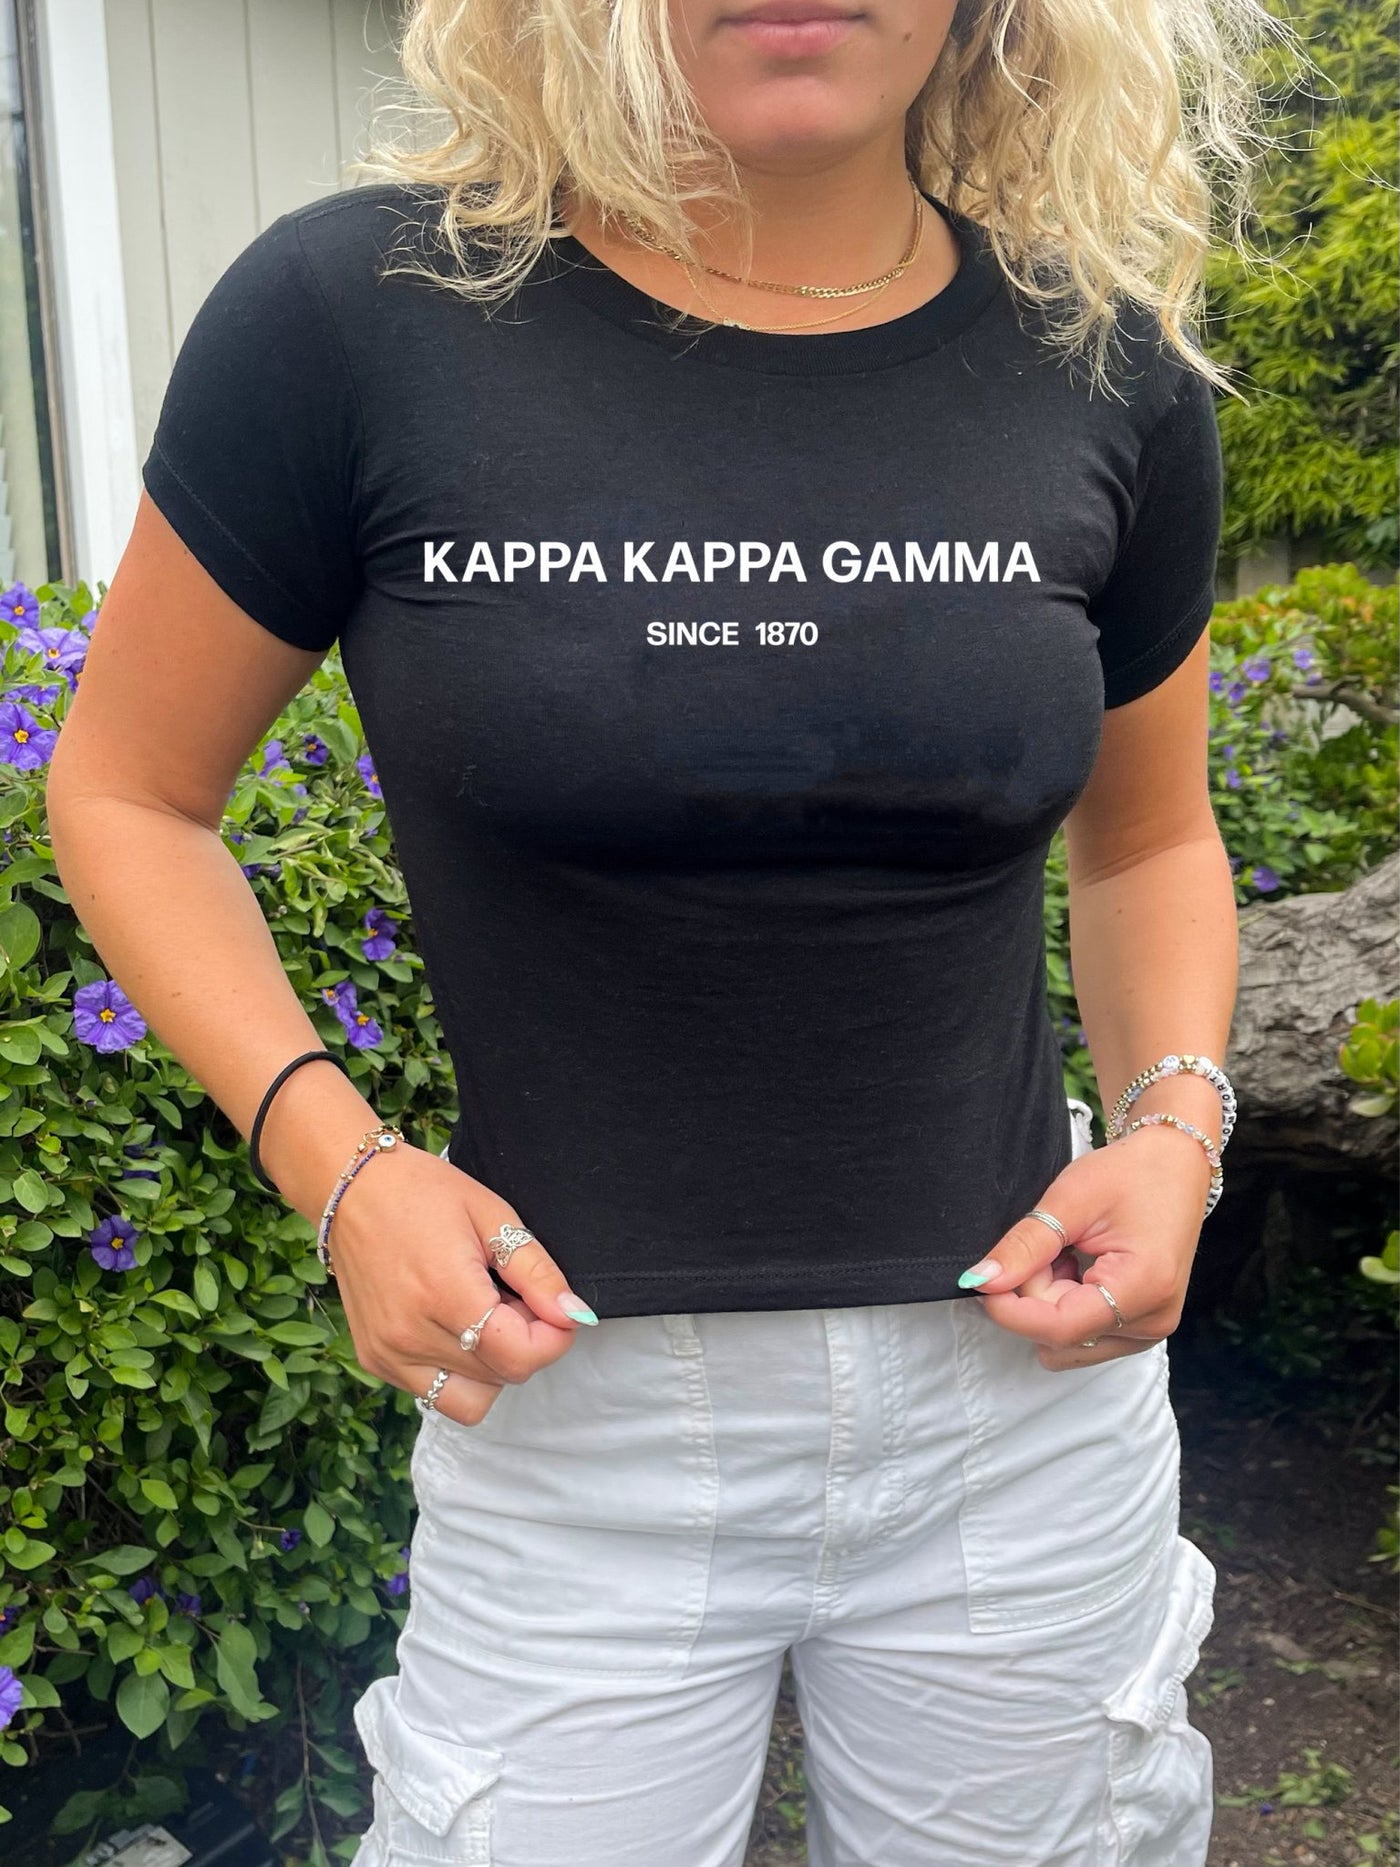 Kappa Kappa Gamma Sorority Baby Tee Crop Top